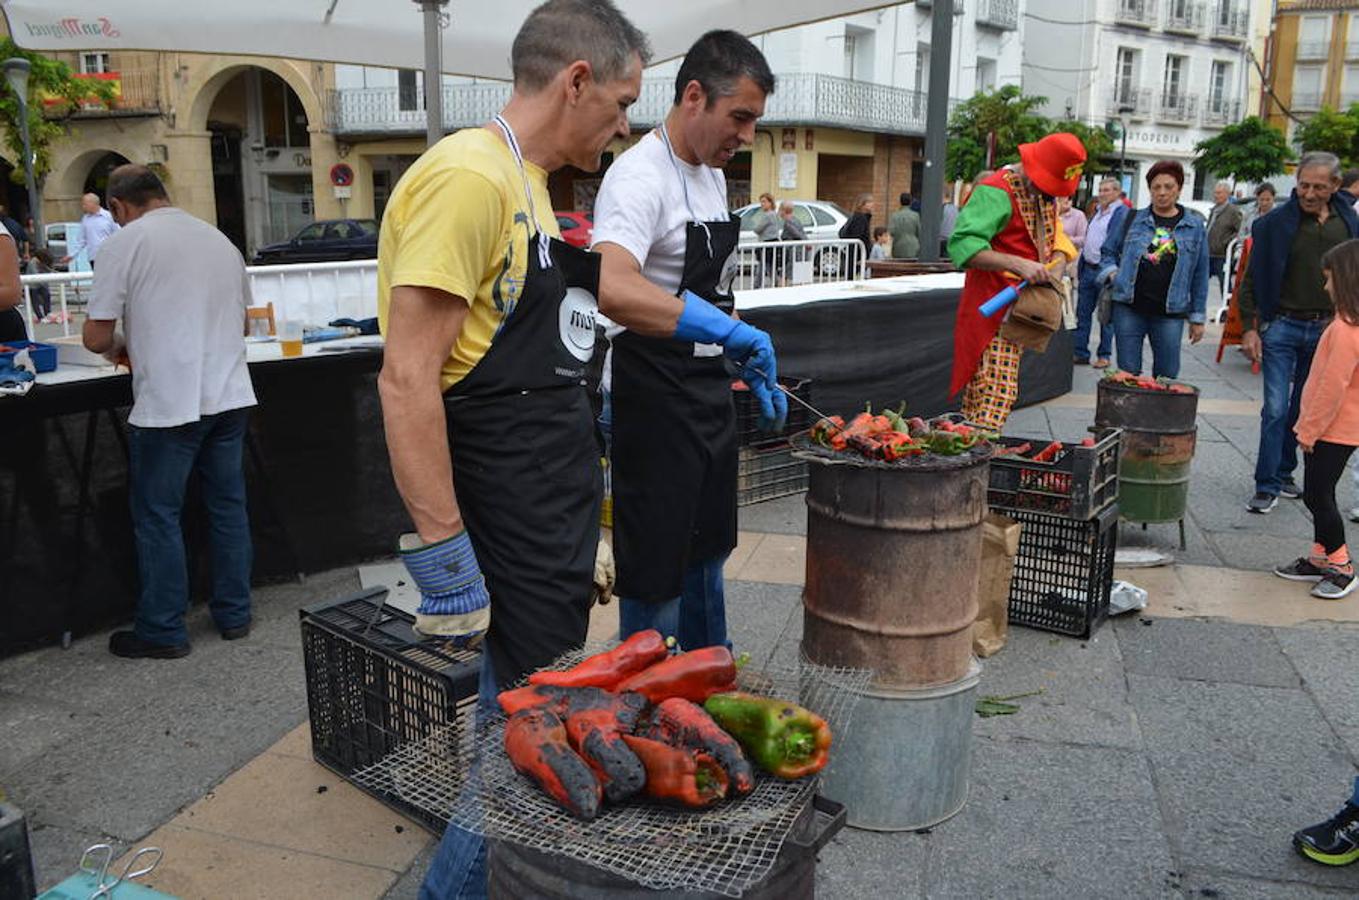 Los pimientos y la tradición del asado para consumo familiar dieron lugar a una bonita celebración en la plaza del Raso de Calahorra